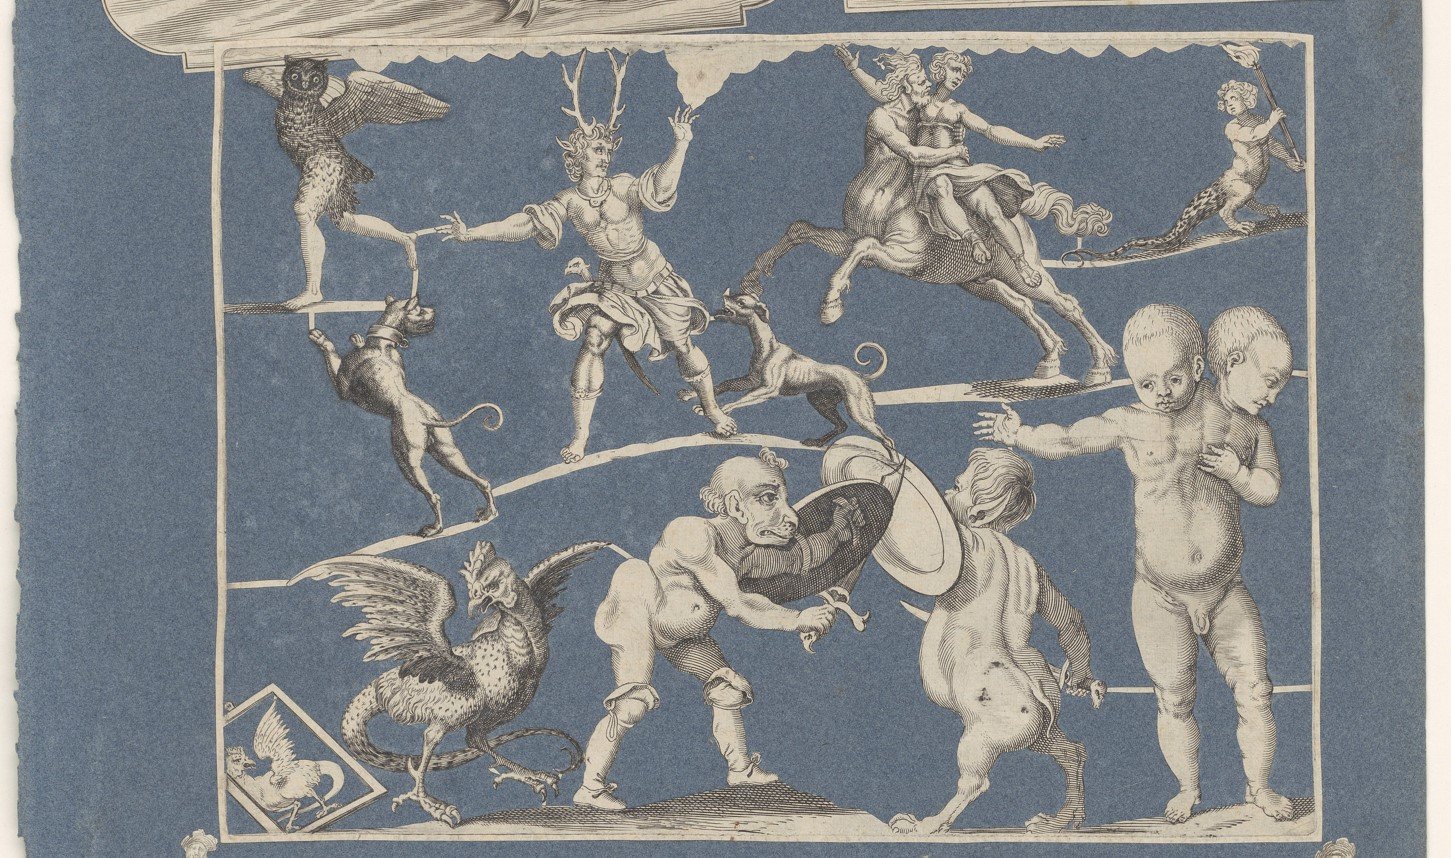 Collage van uitgeknipte prenten geplakt op albumblad van blauw papier, Michael Snijders, ca. 1690-1720 (Rijksmuseum Amsterdam)